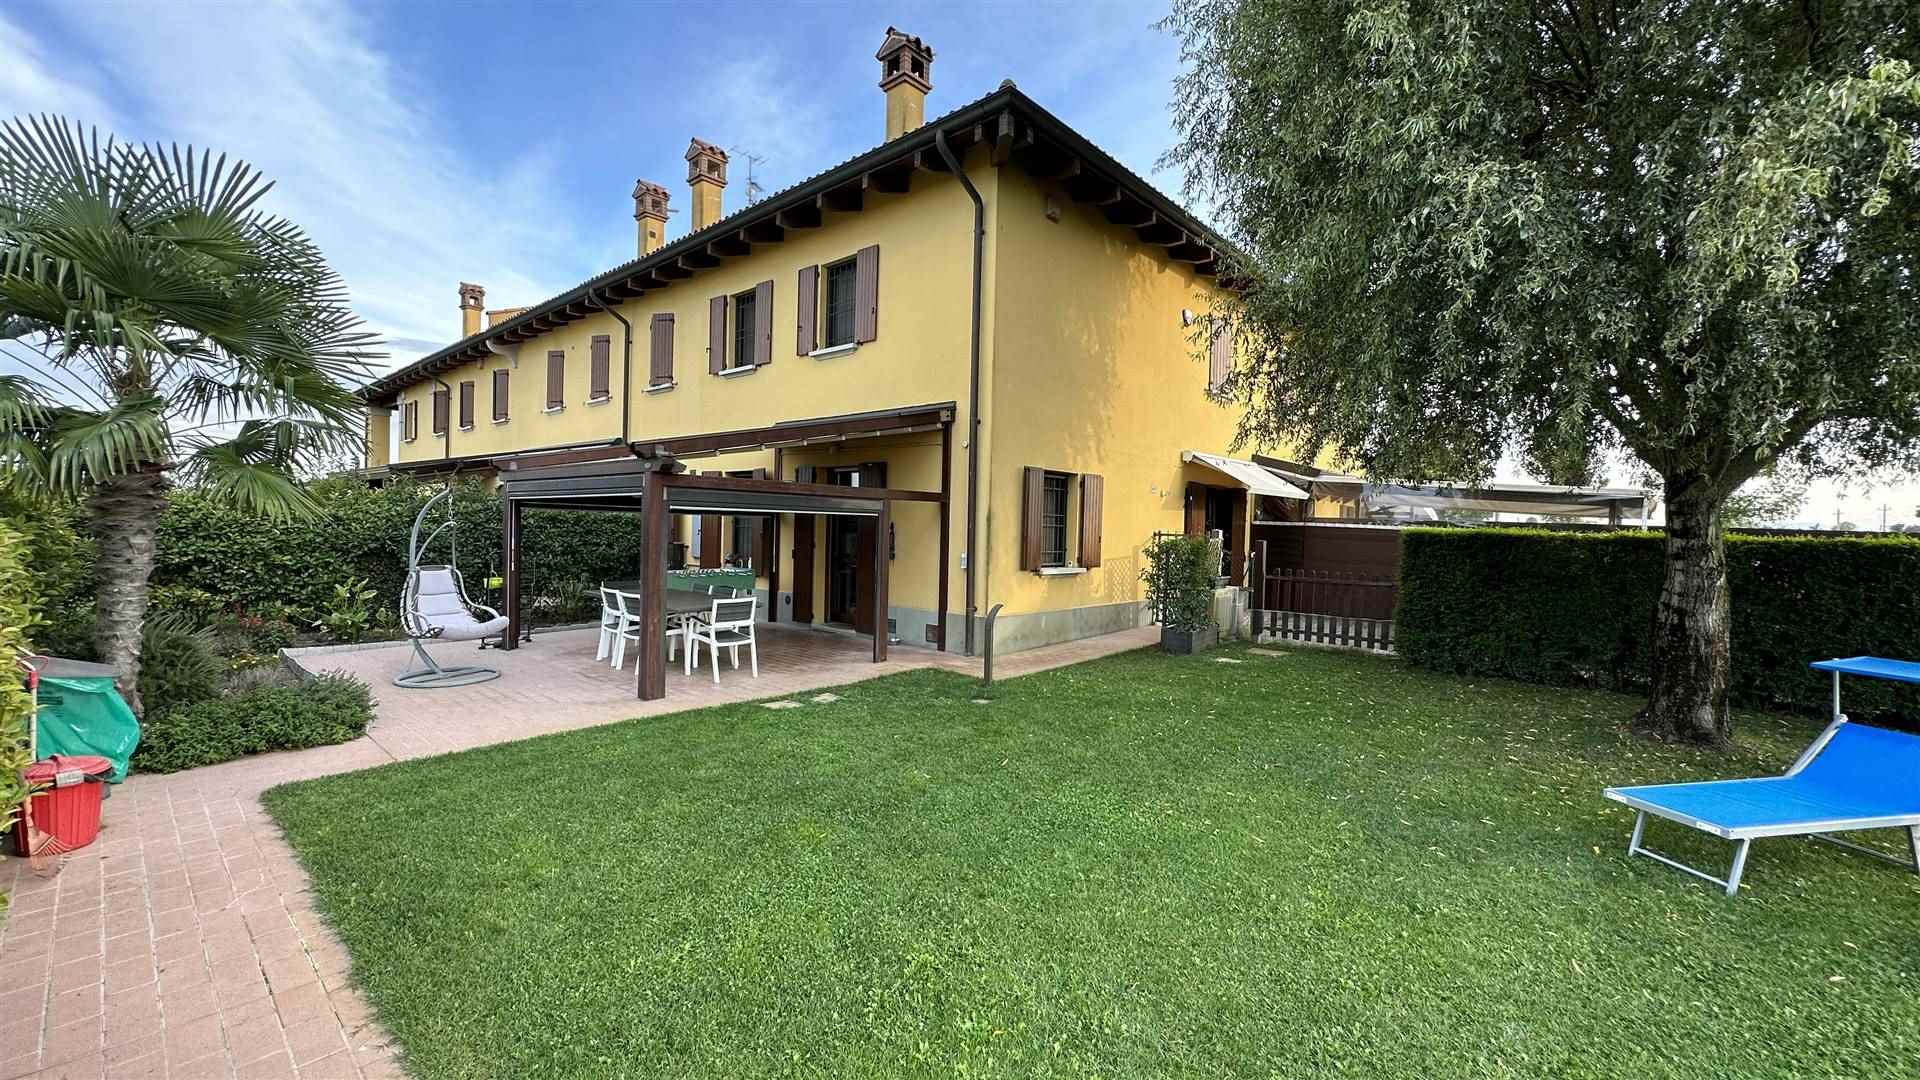 Villa in vendita a Argelato, 4 locali, prezzo € 300.000 | PortaleAgenzieImmobiliari.it